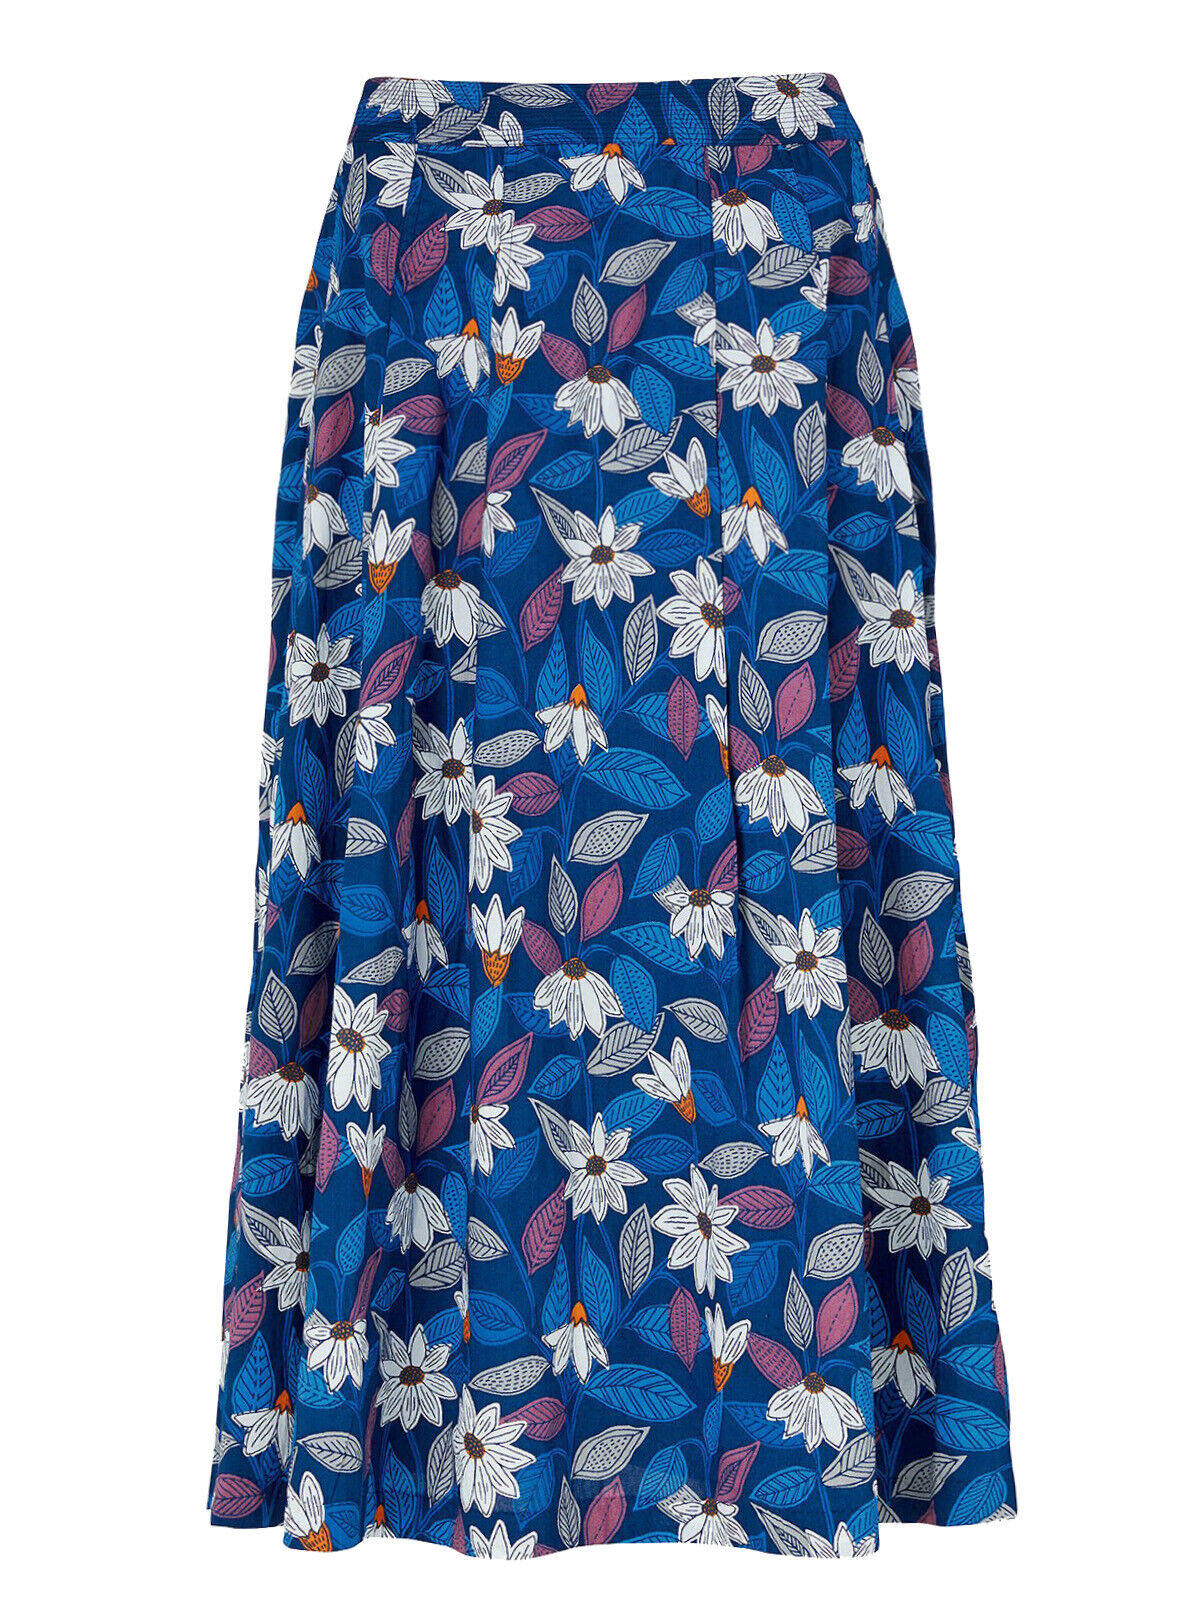 EX SEASALT Blue Studio Flowers Marine Sea Mist Skirt Sizes 10 or 12 RRP £60